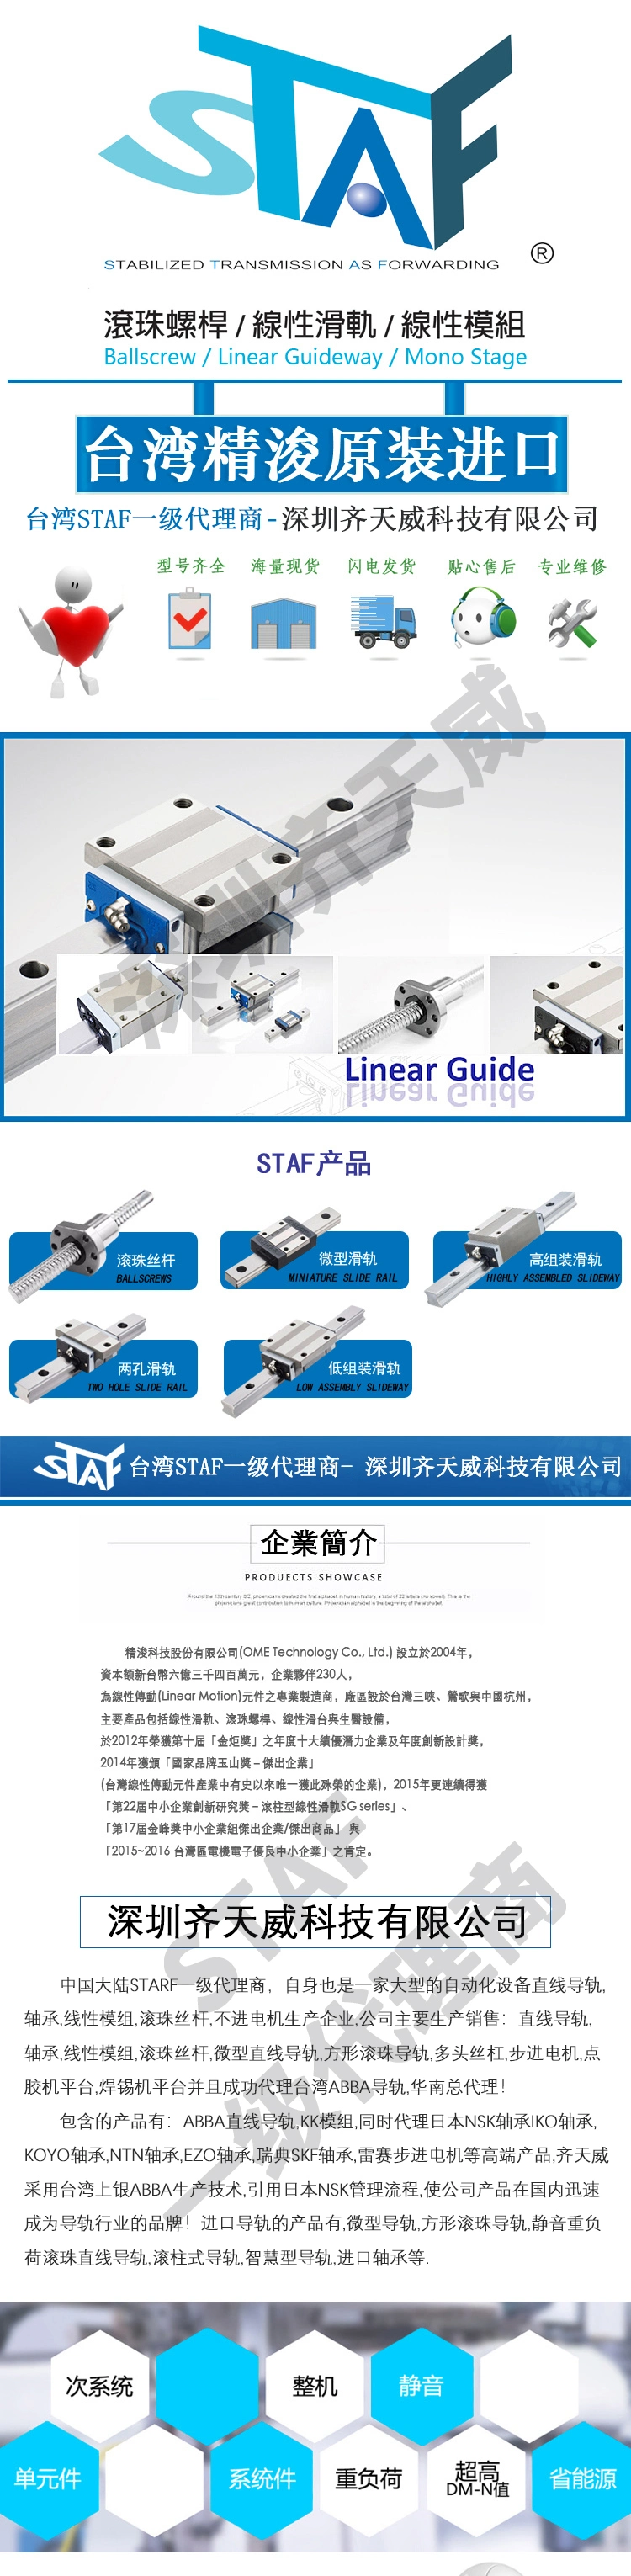 Electronic Equipment Staf Guide Rail Bgxh15fs